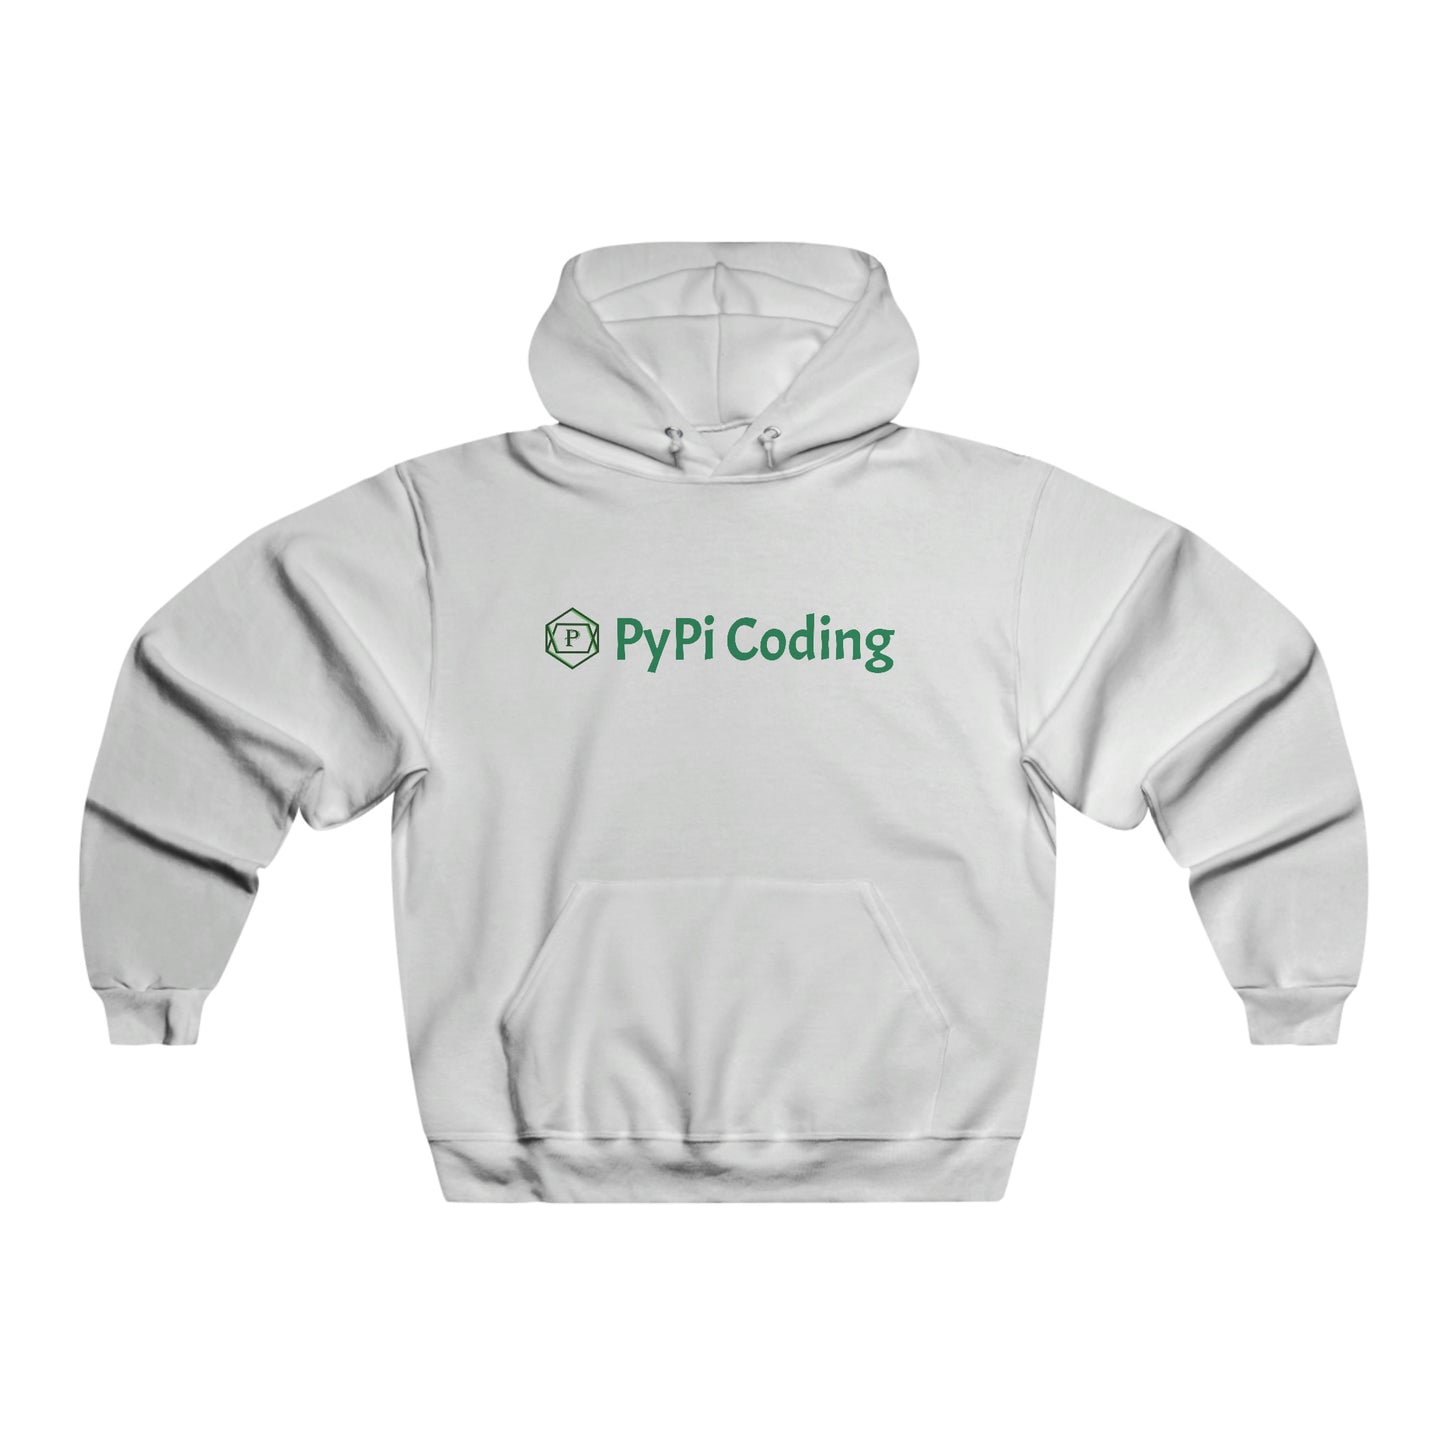 Pypi Coding Hooded Sweatshirt